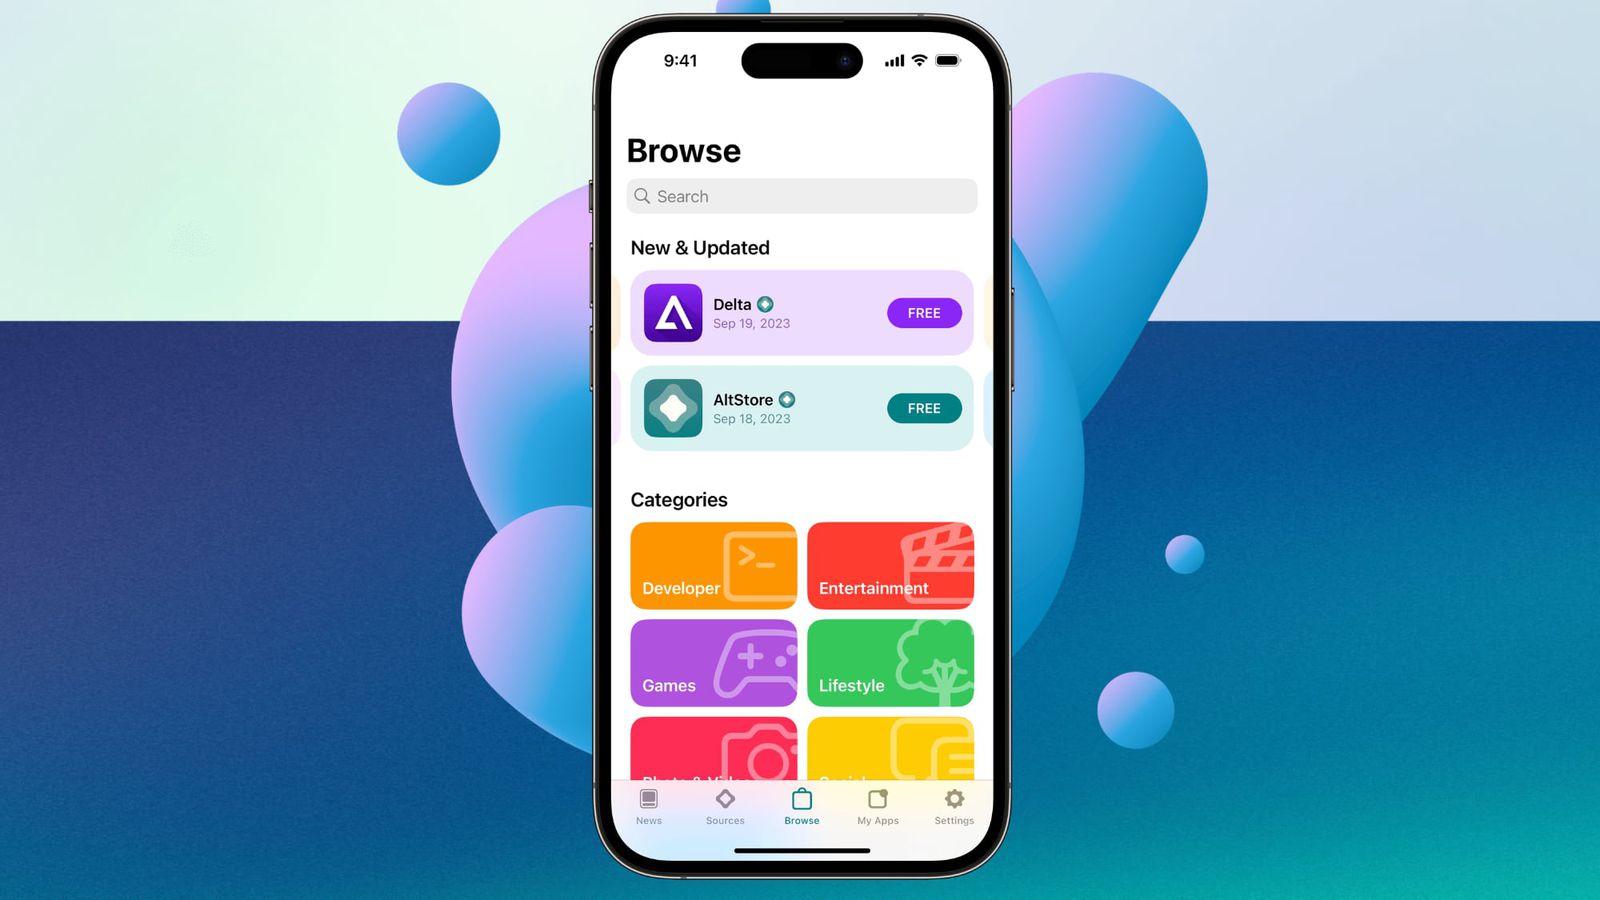 من iPhoneIslam.com، هاتف ذكي يعرض واجهة متجر تطبيقات مع أيقونات تطبيقات ملونة ضمن فئات مثل "جديد ومحدث" و"أخبار الهامش".